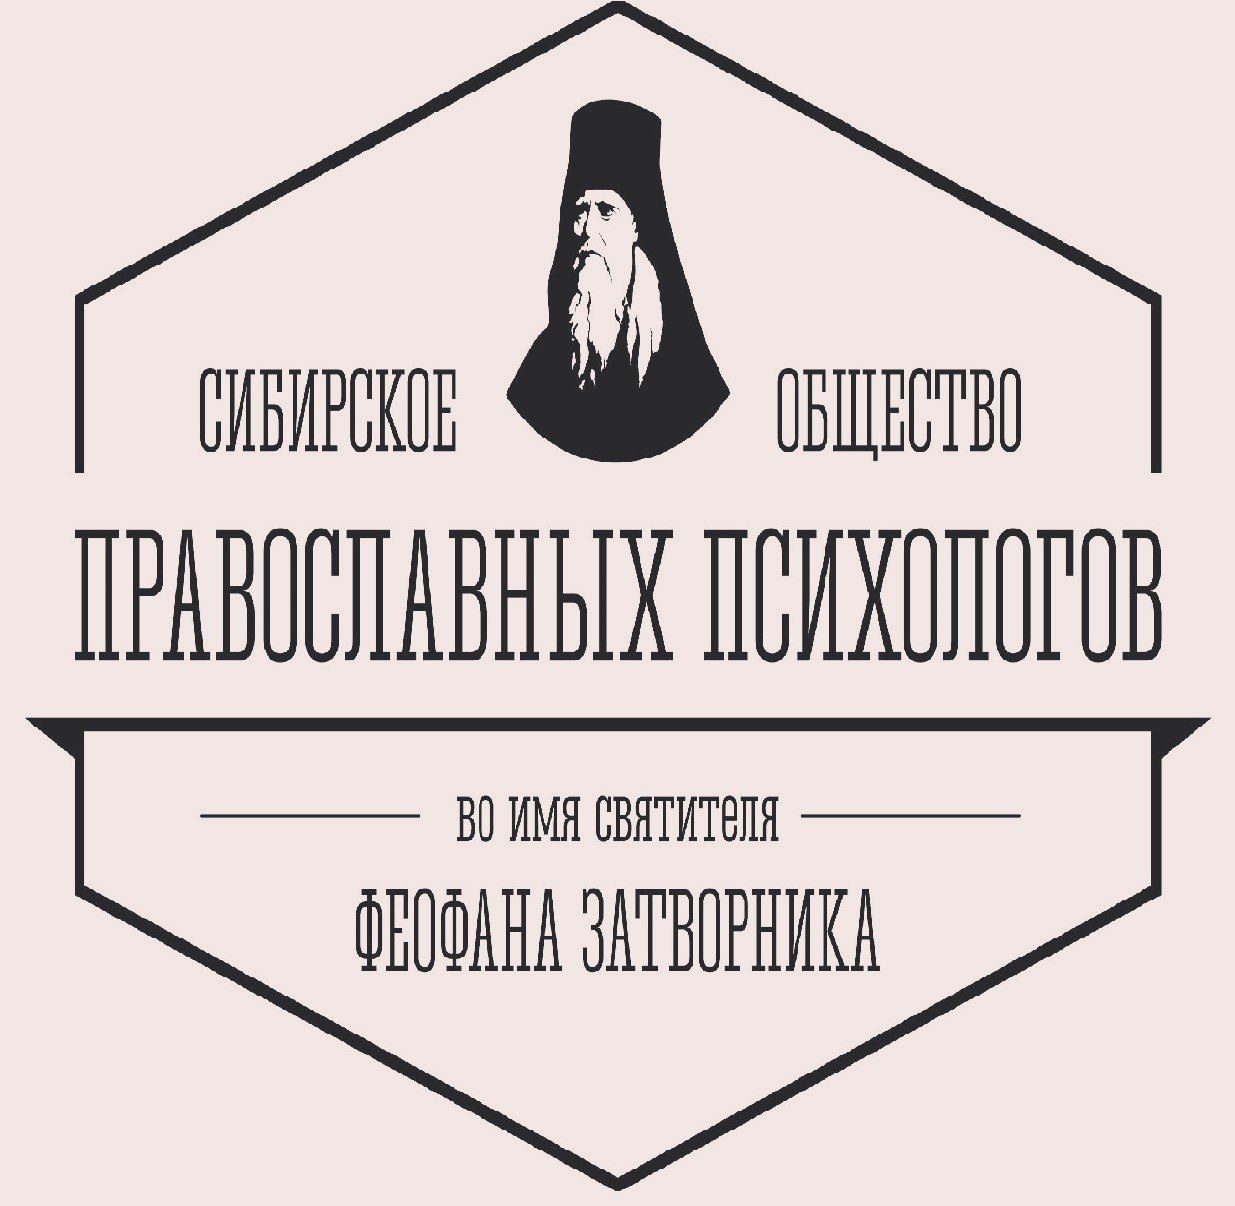 Открытые мероприятия Сибирского Общество православных психологов во имя святителя Феофана Затворника в марте